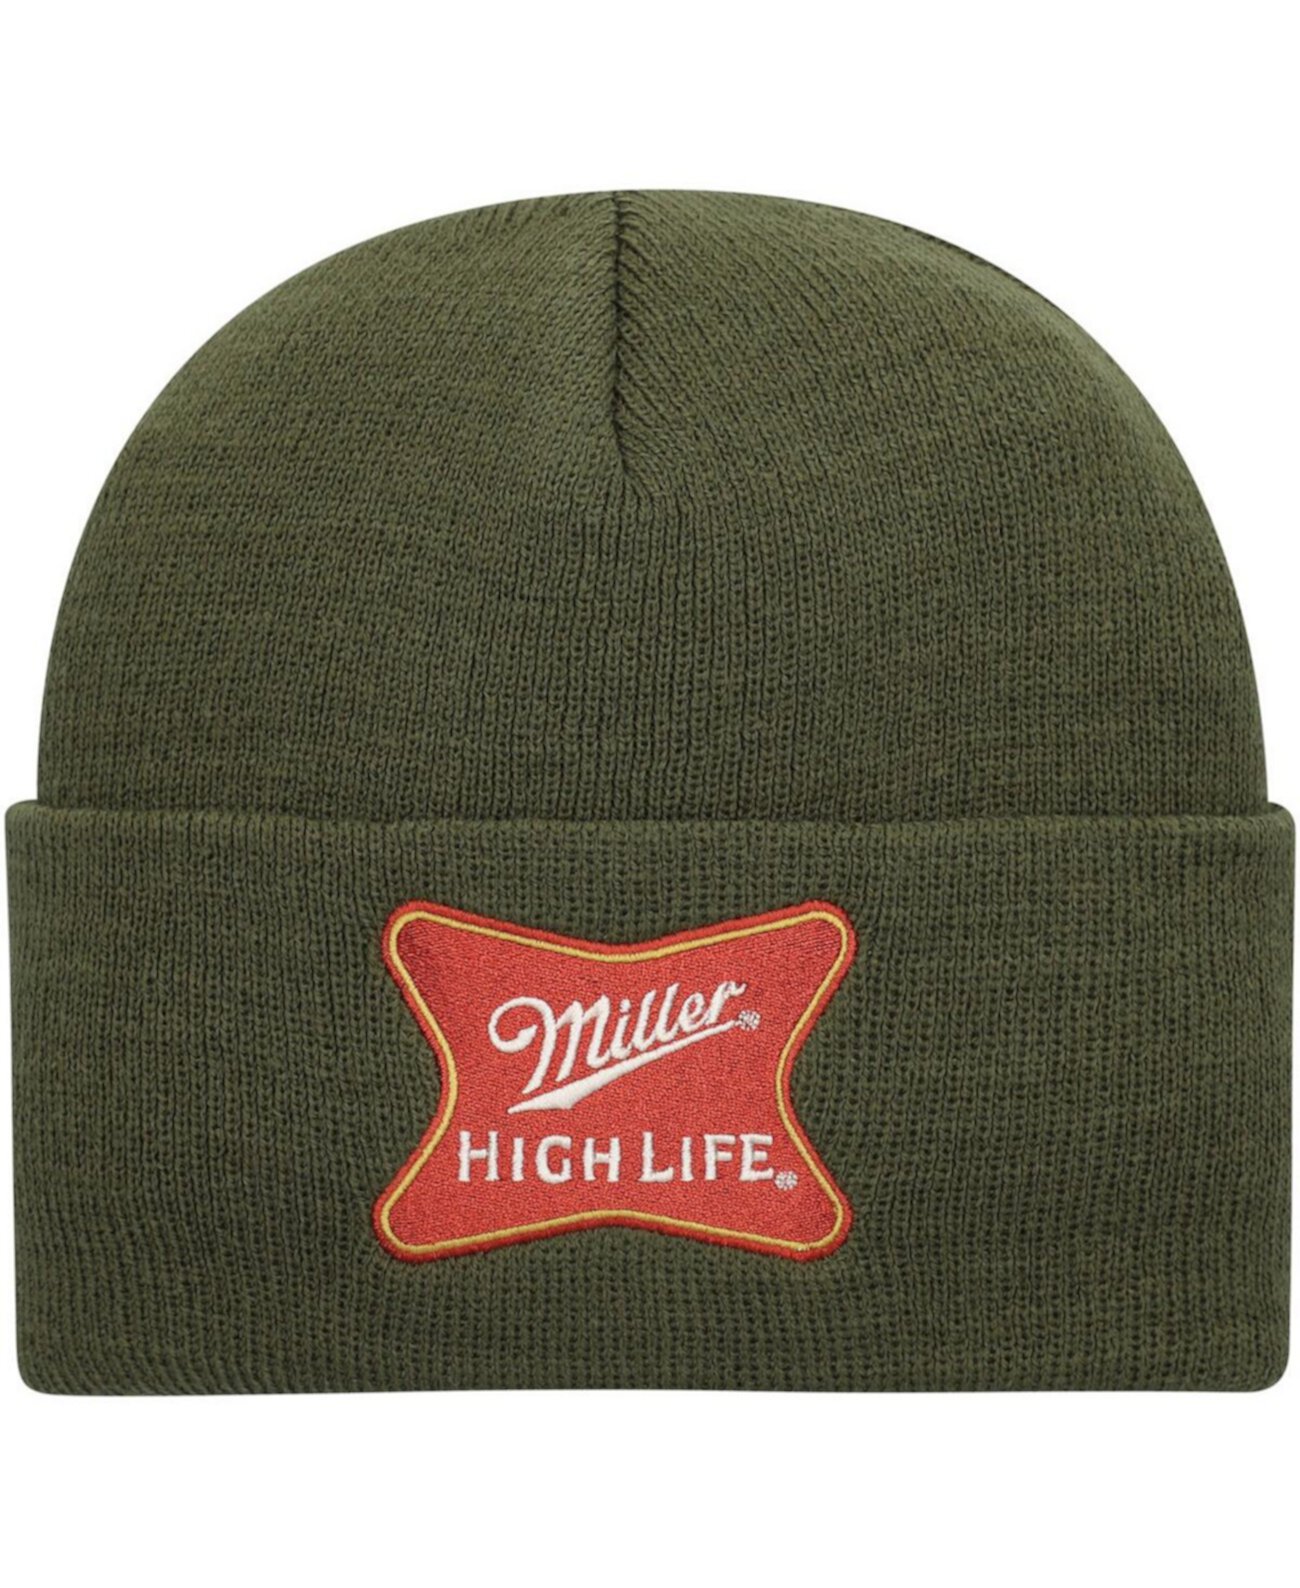 Мужская оливковая вязаная шапка Miller High Life с манжетами American Needle